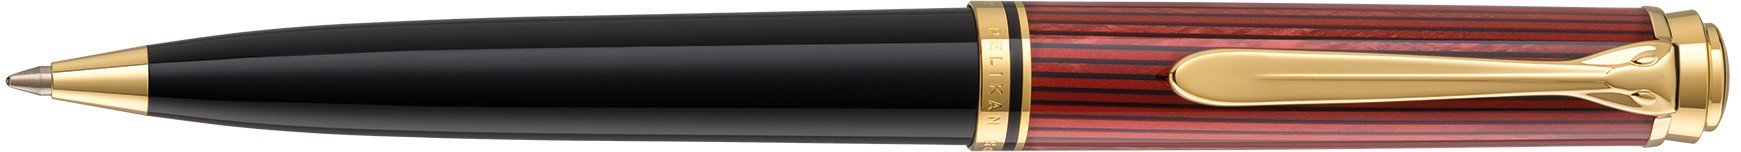 Ручка шариковая Pelikan Souveraen K 600, черный/красный, подарочная коробка